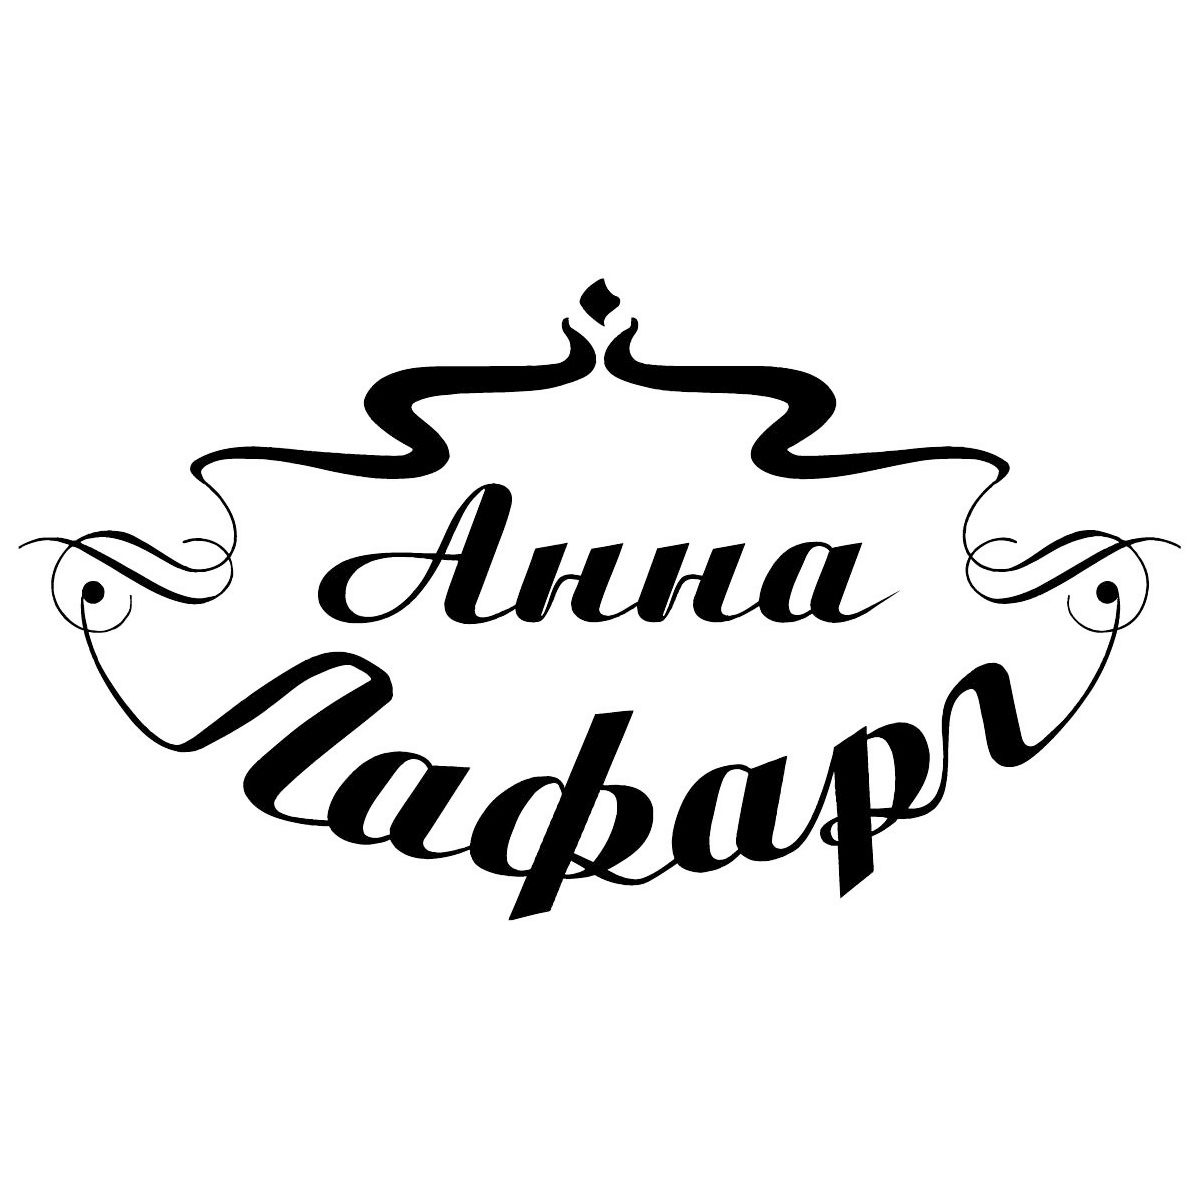 Anna Lafarg